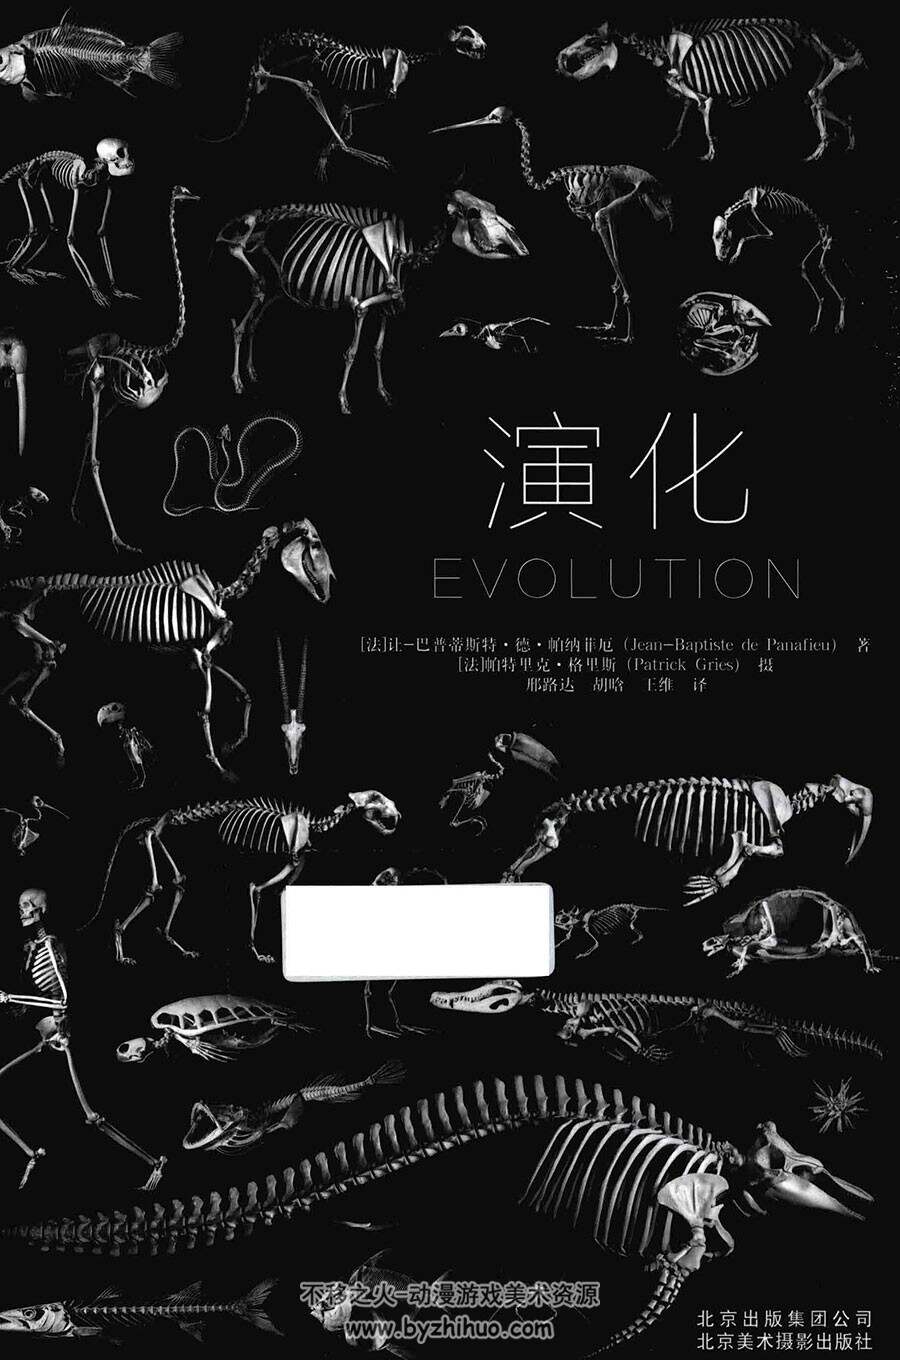 演化 动物骨骼结构精讲书籍图片参考 429P